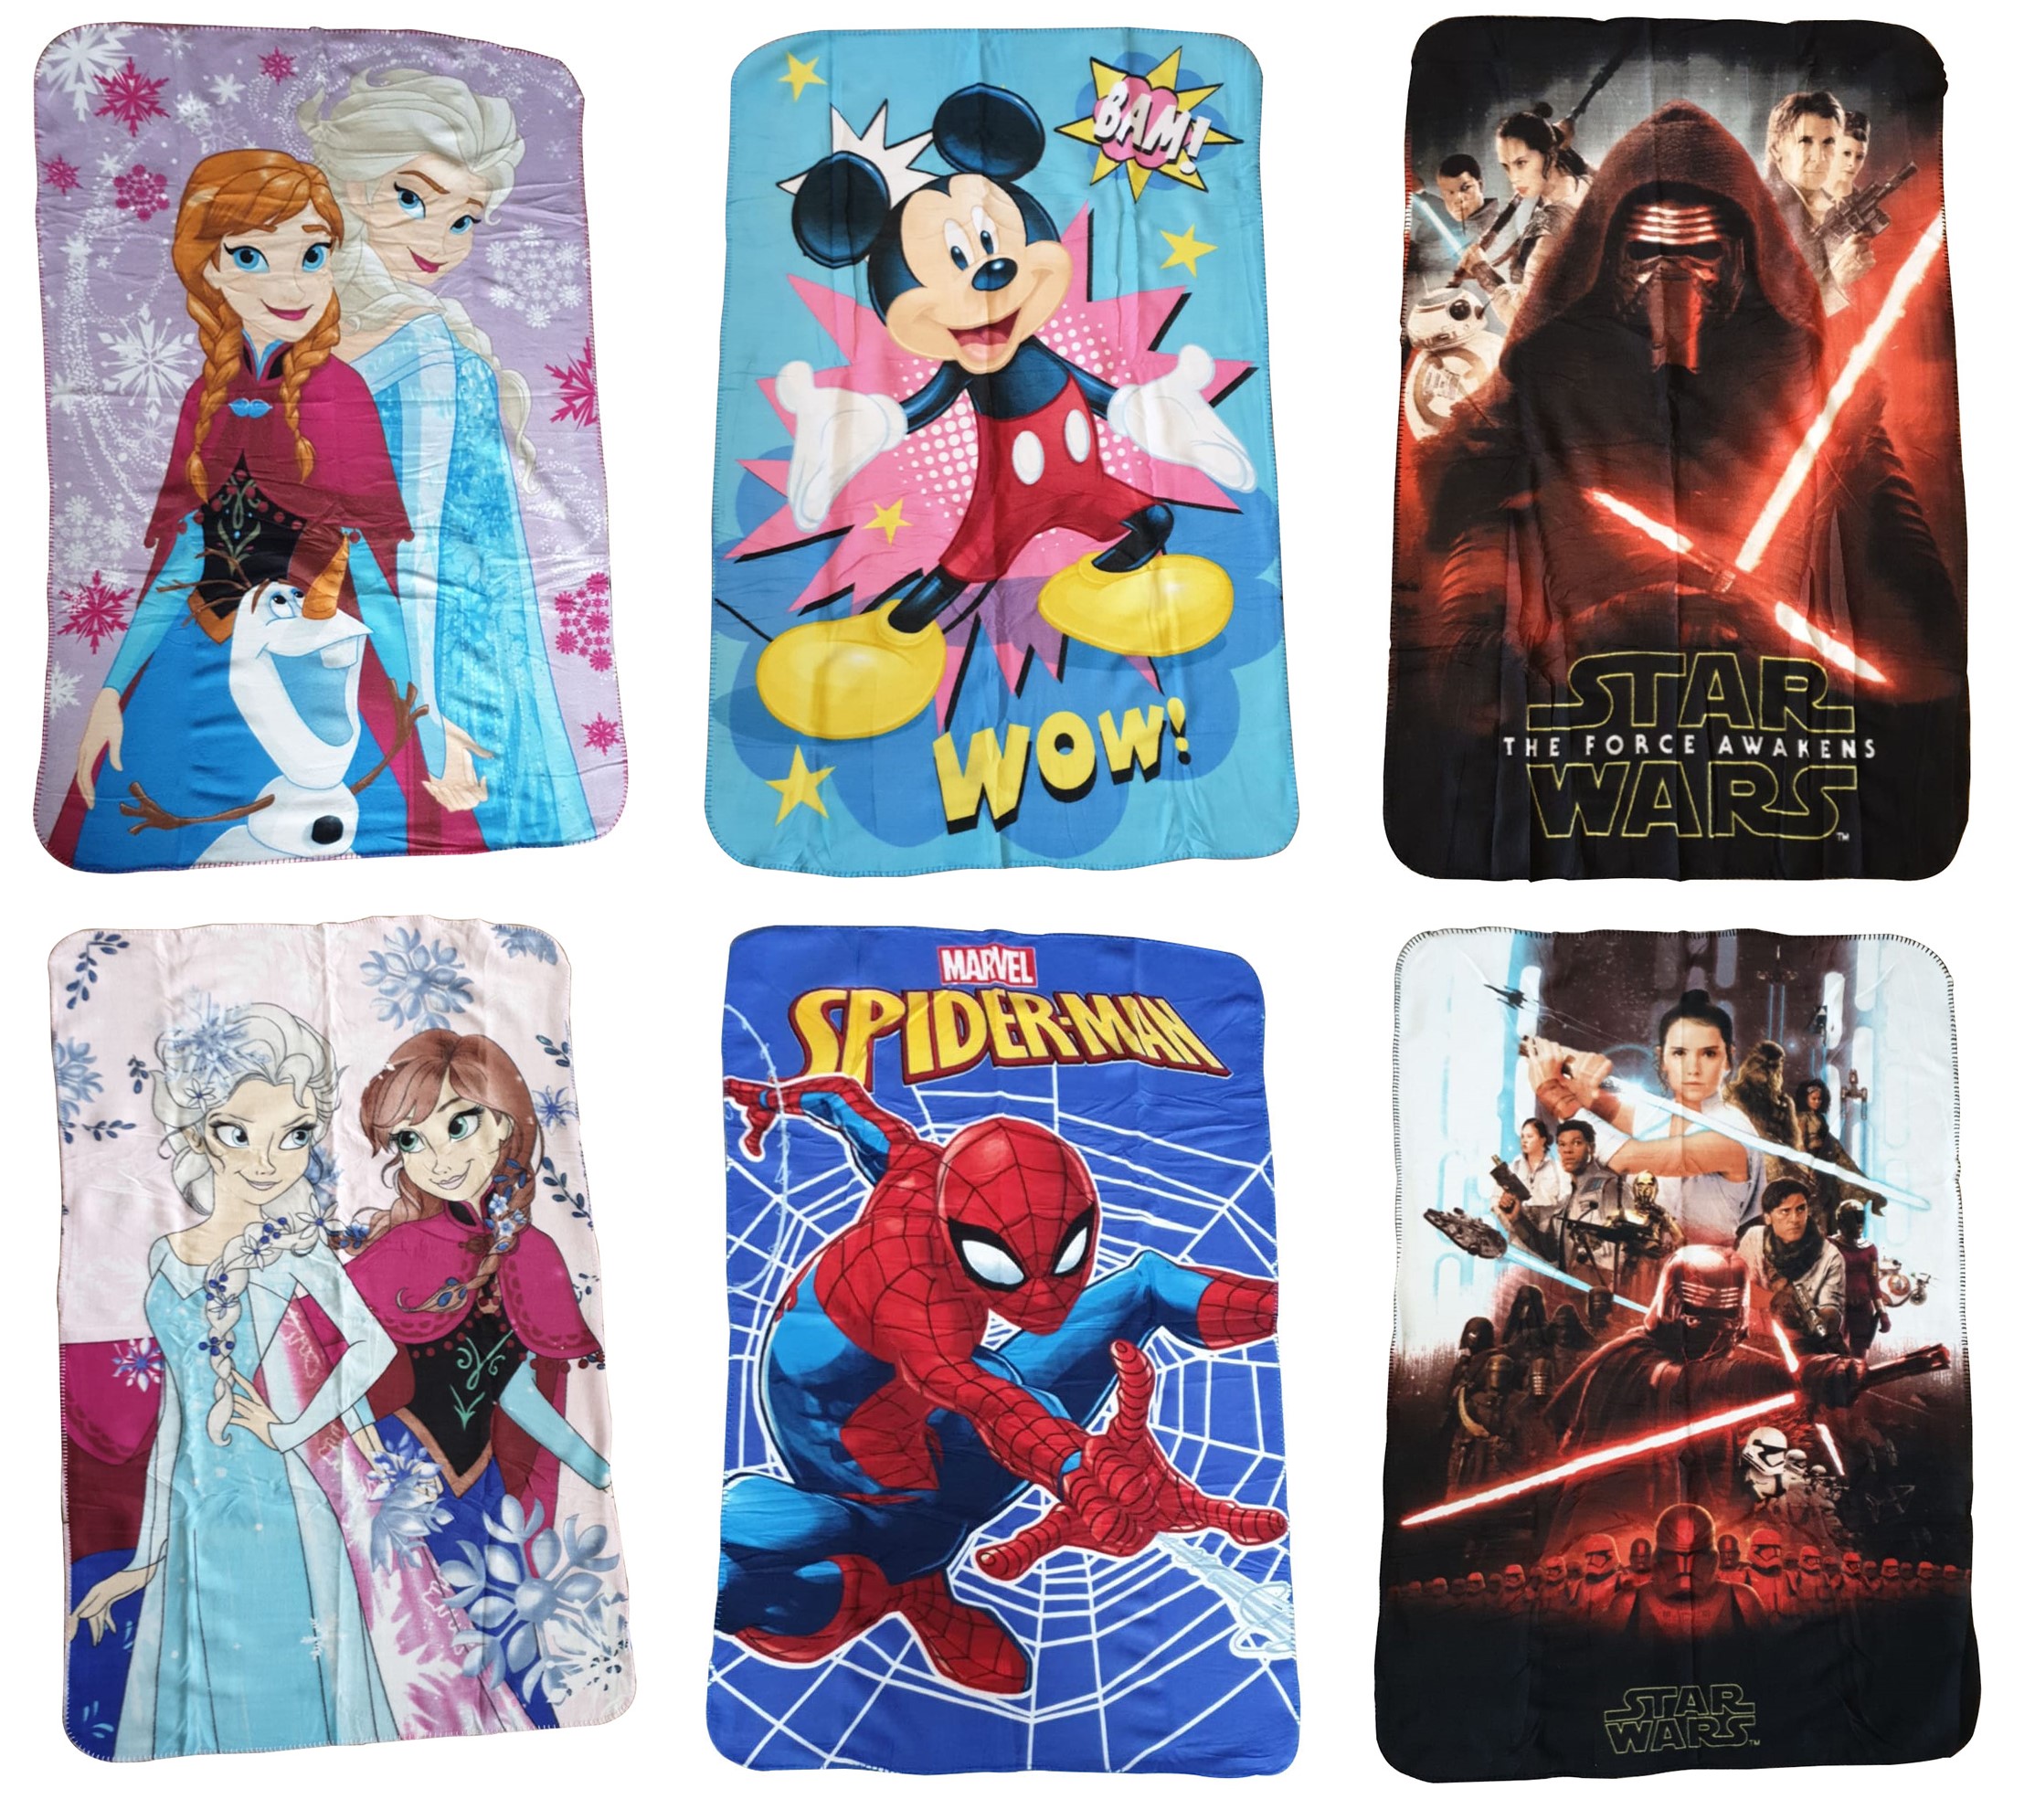 Kinder Fleecedecken 100 x 150 cm groß kuschelweich Spiderman, Frozen, Star Wars, Mickey Maus (Auswahl)